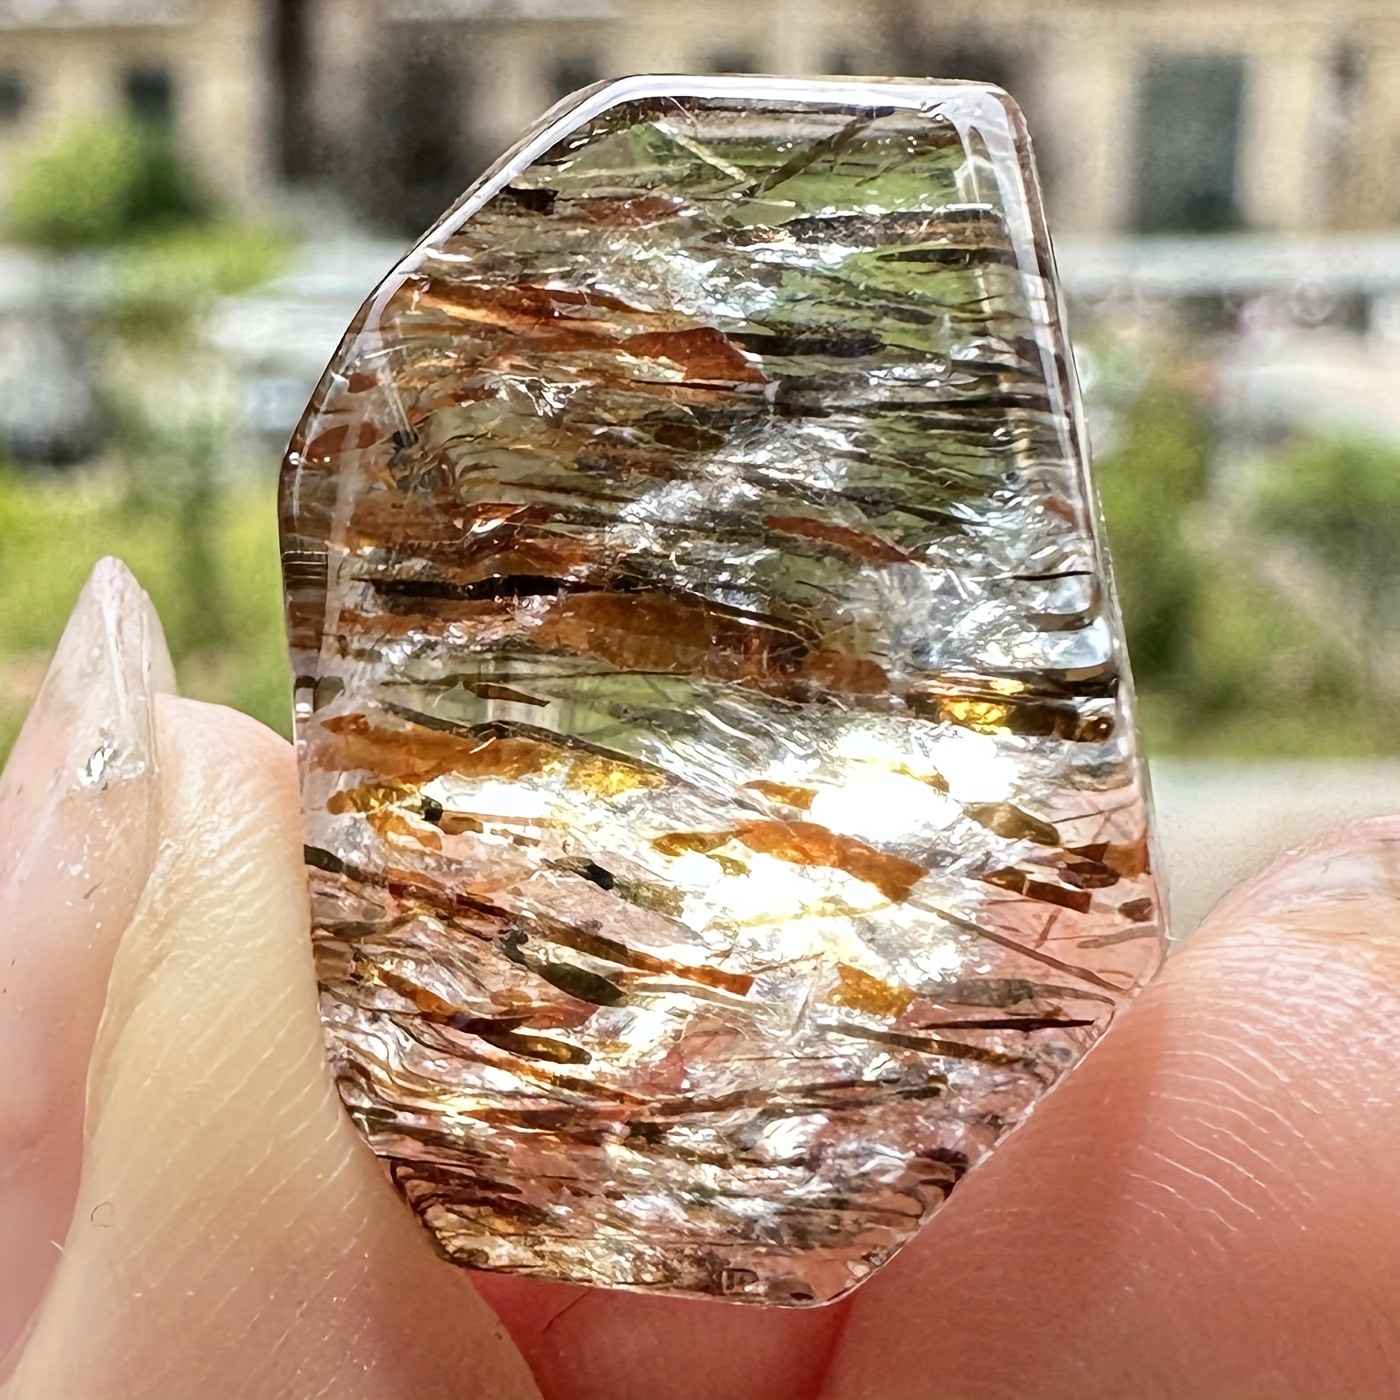 10 Tipos Piedras Preciosas Cristales Curativos Piedras - Temu Chile